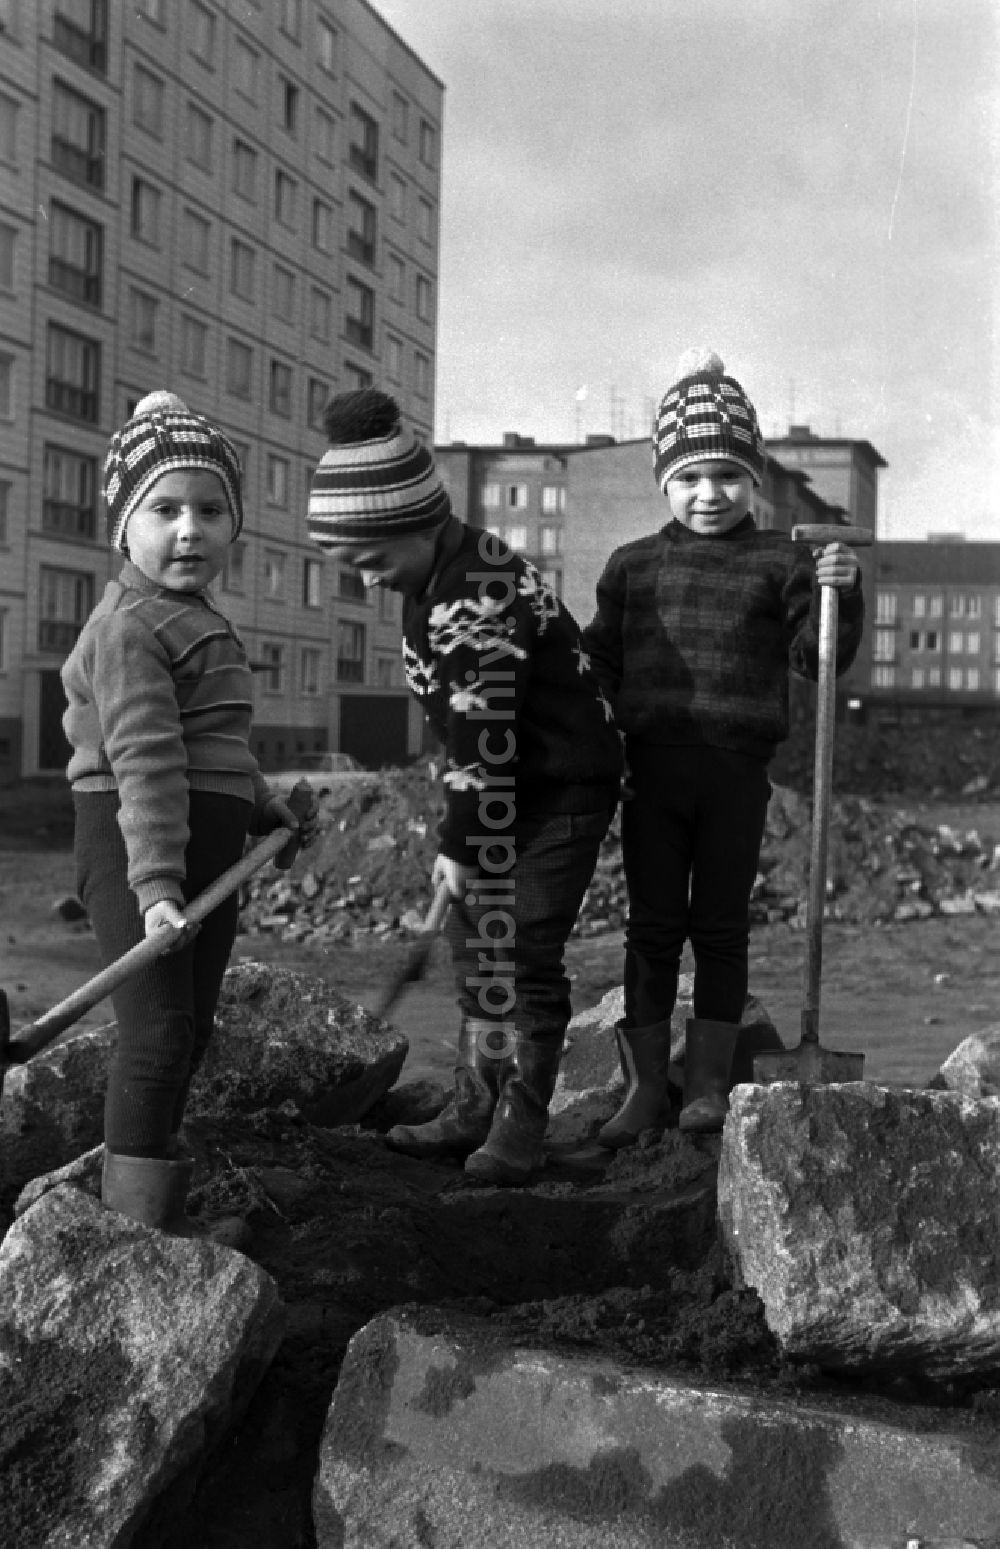 DDR-Fotoarchiv: Magdeburg - Kleine Kinder mit Gummistiefeln und Kinderspaten spielen auf einem Hinterhof in Berlin